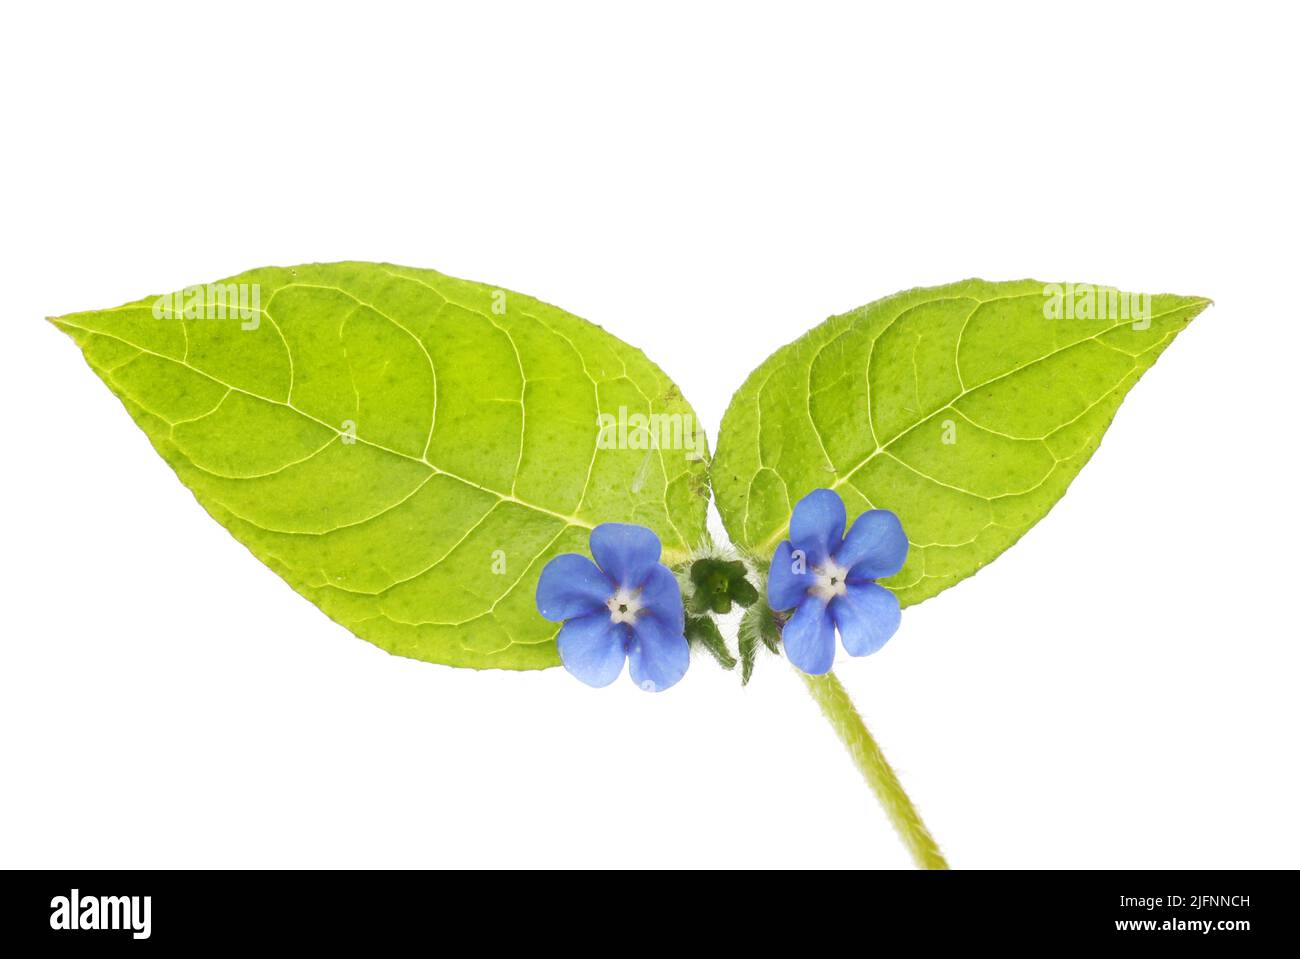 Primer plano de flores de alcanet verdes y follaje aislado contra el blanco Foto de stock